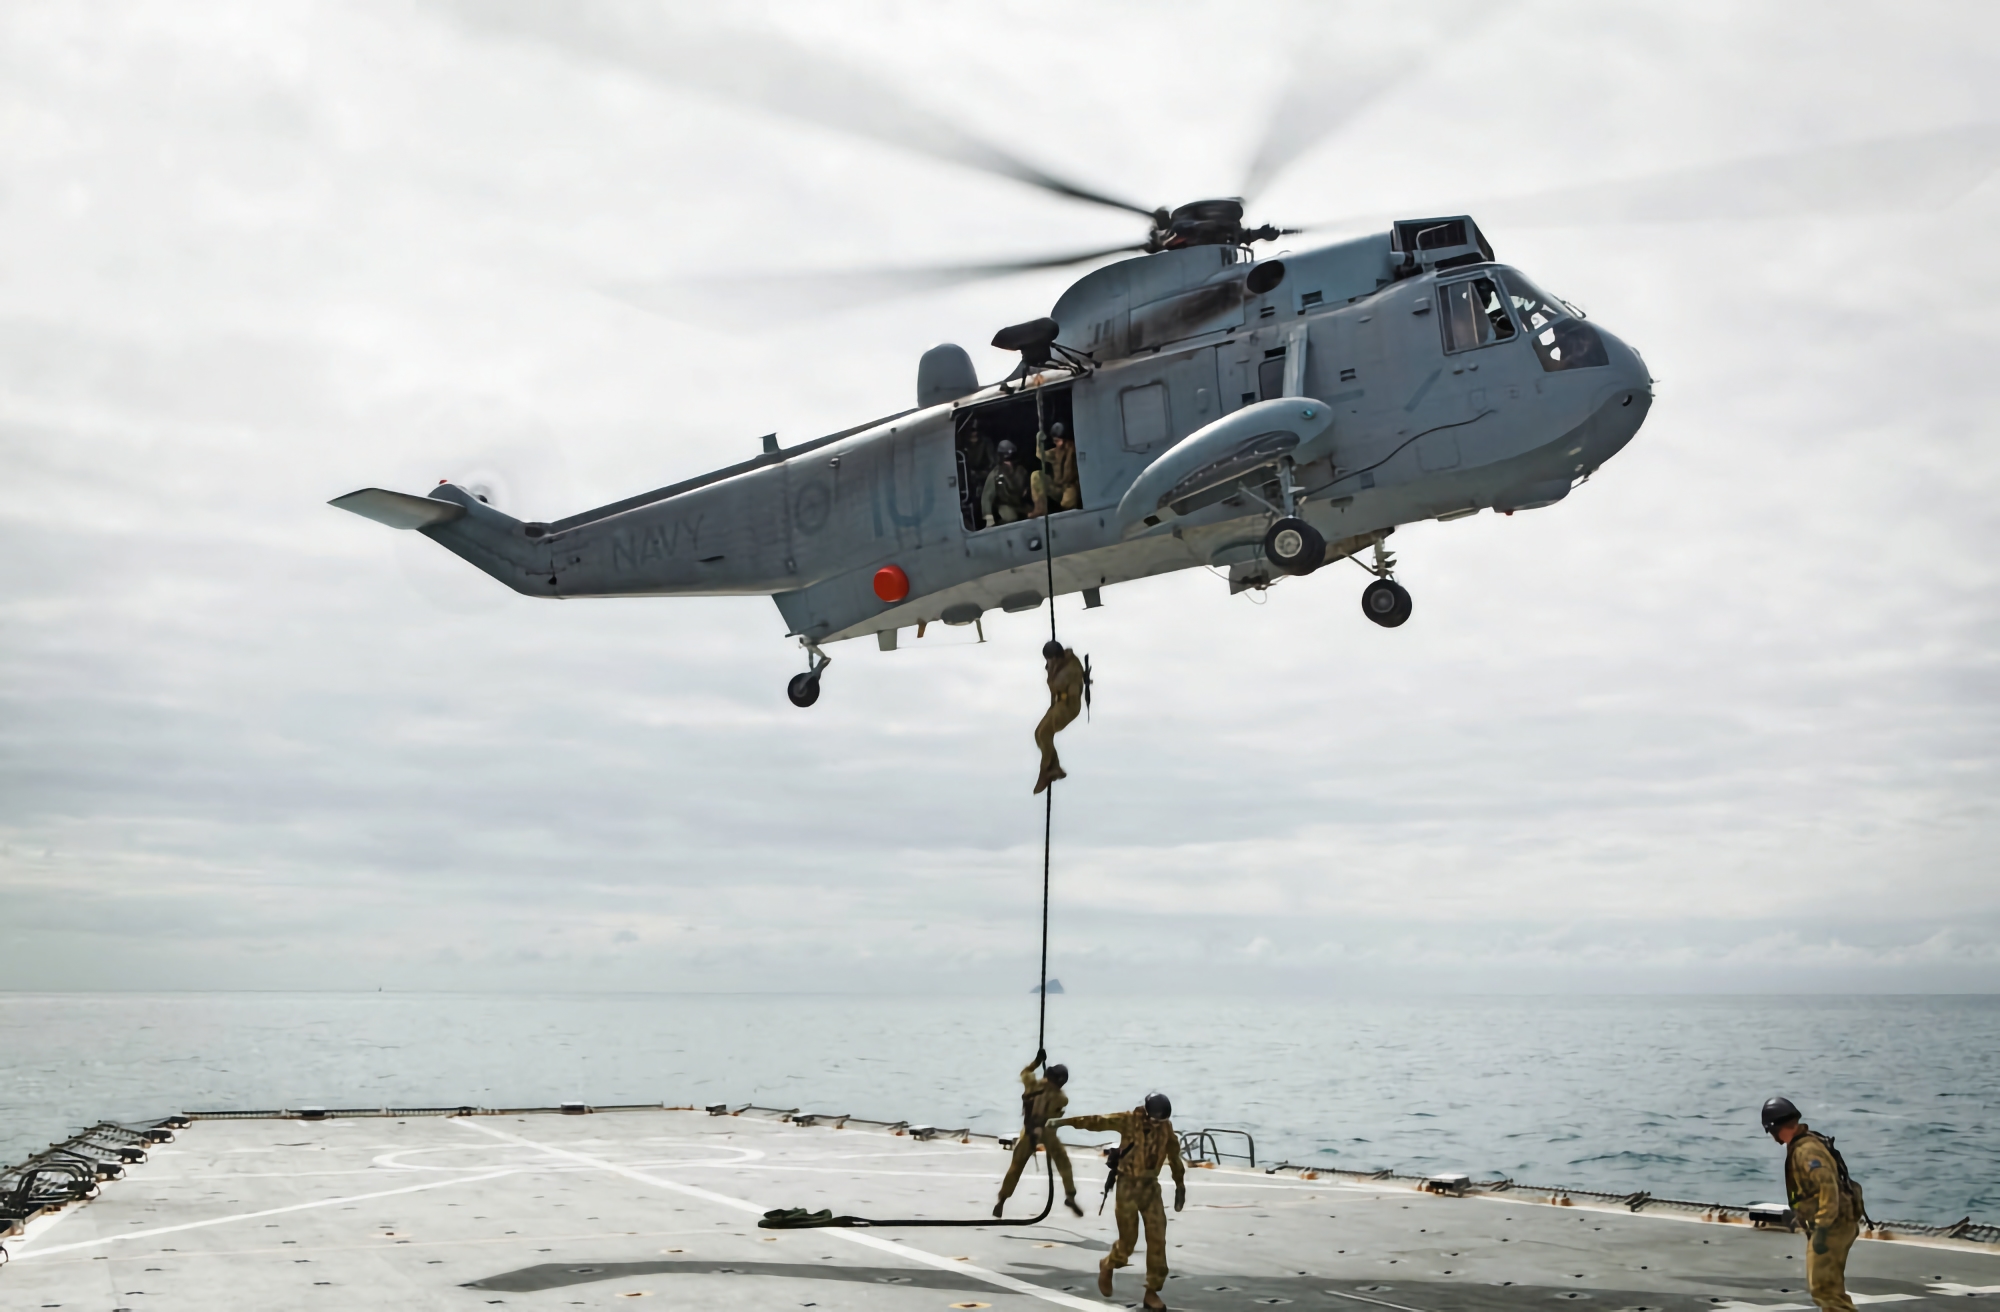 Wielka Brytania przekazuje Ukrainie trzy helikoptery Sikorsky S-61 Sea King, które będą wykorzystywane w misjach poszukiwawczo-ratowniczych